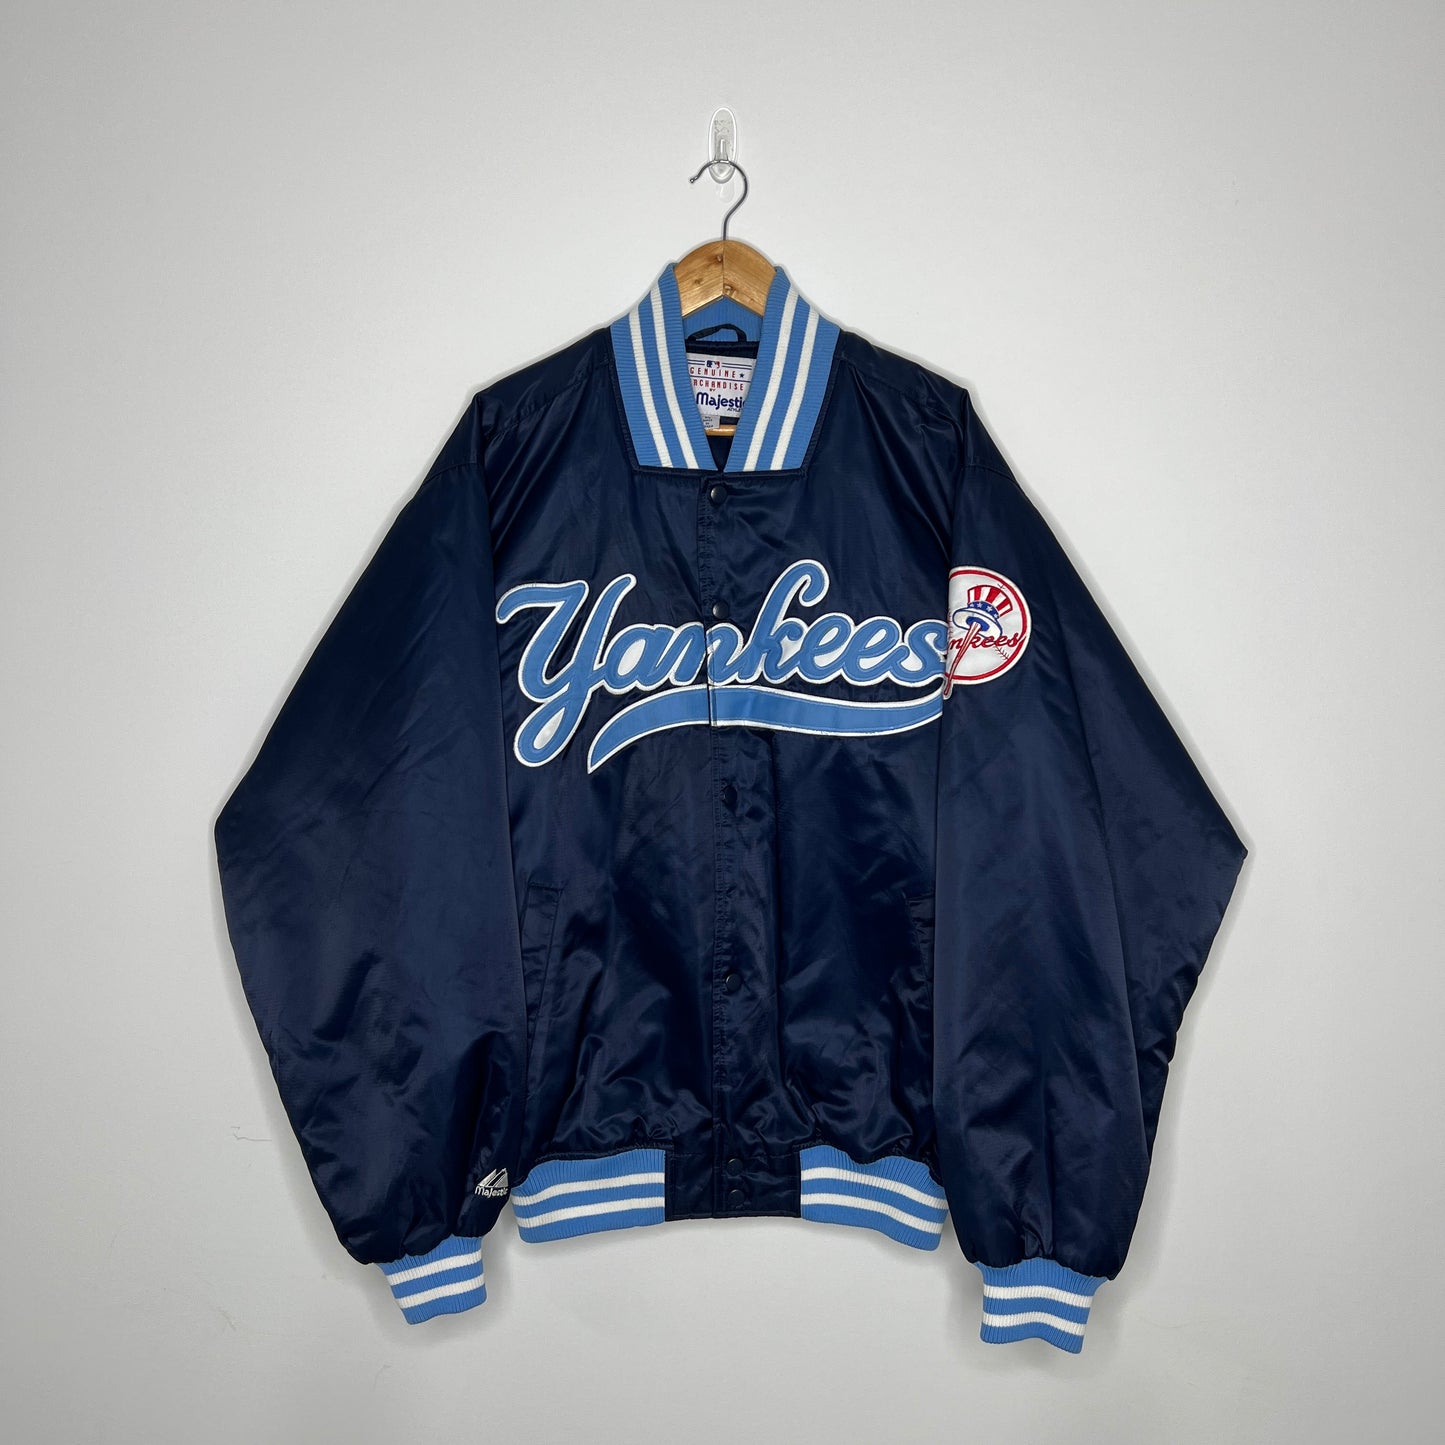 New York Yankees Majestic Jacket